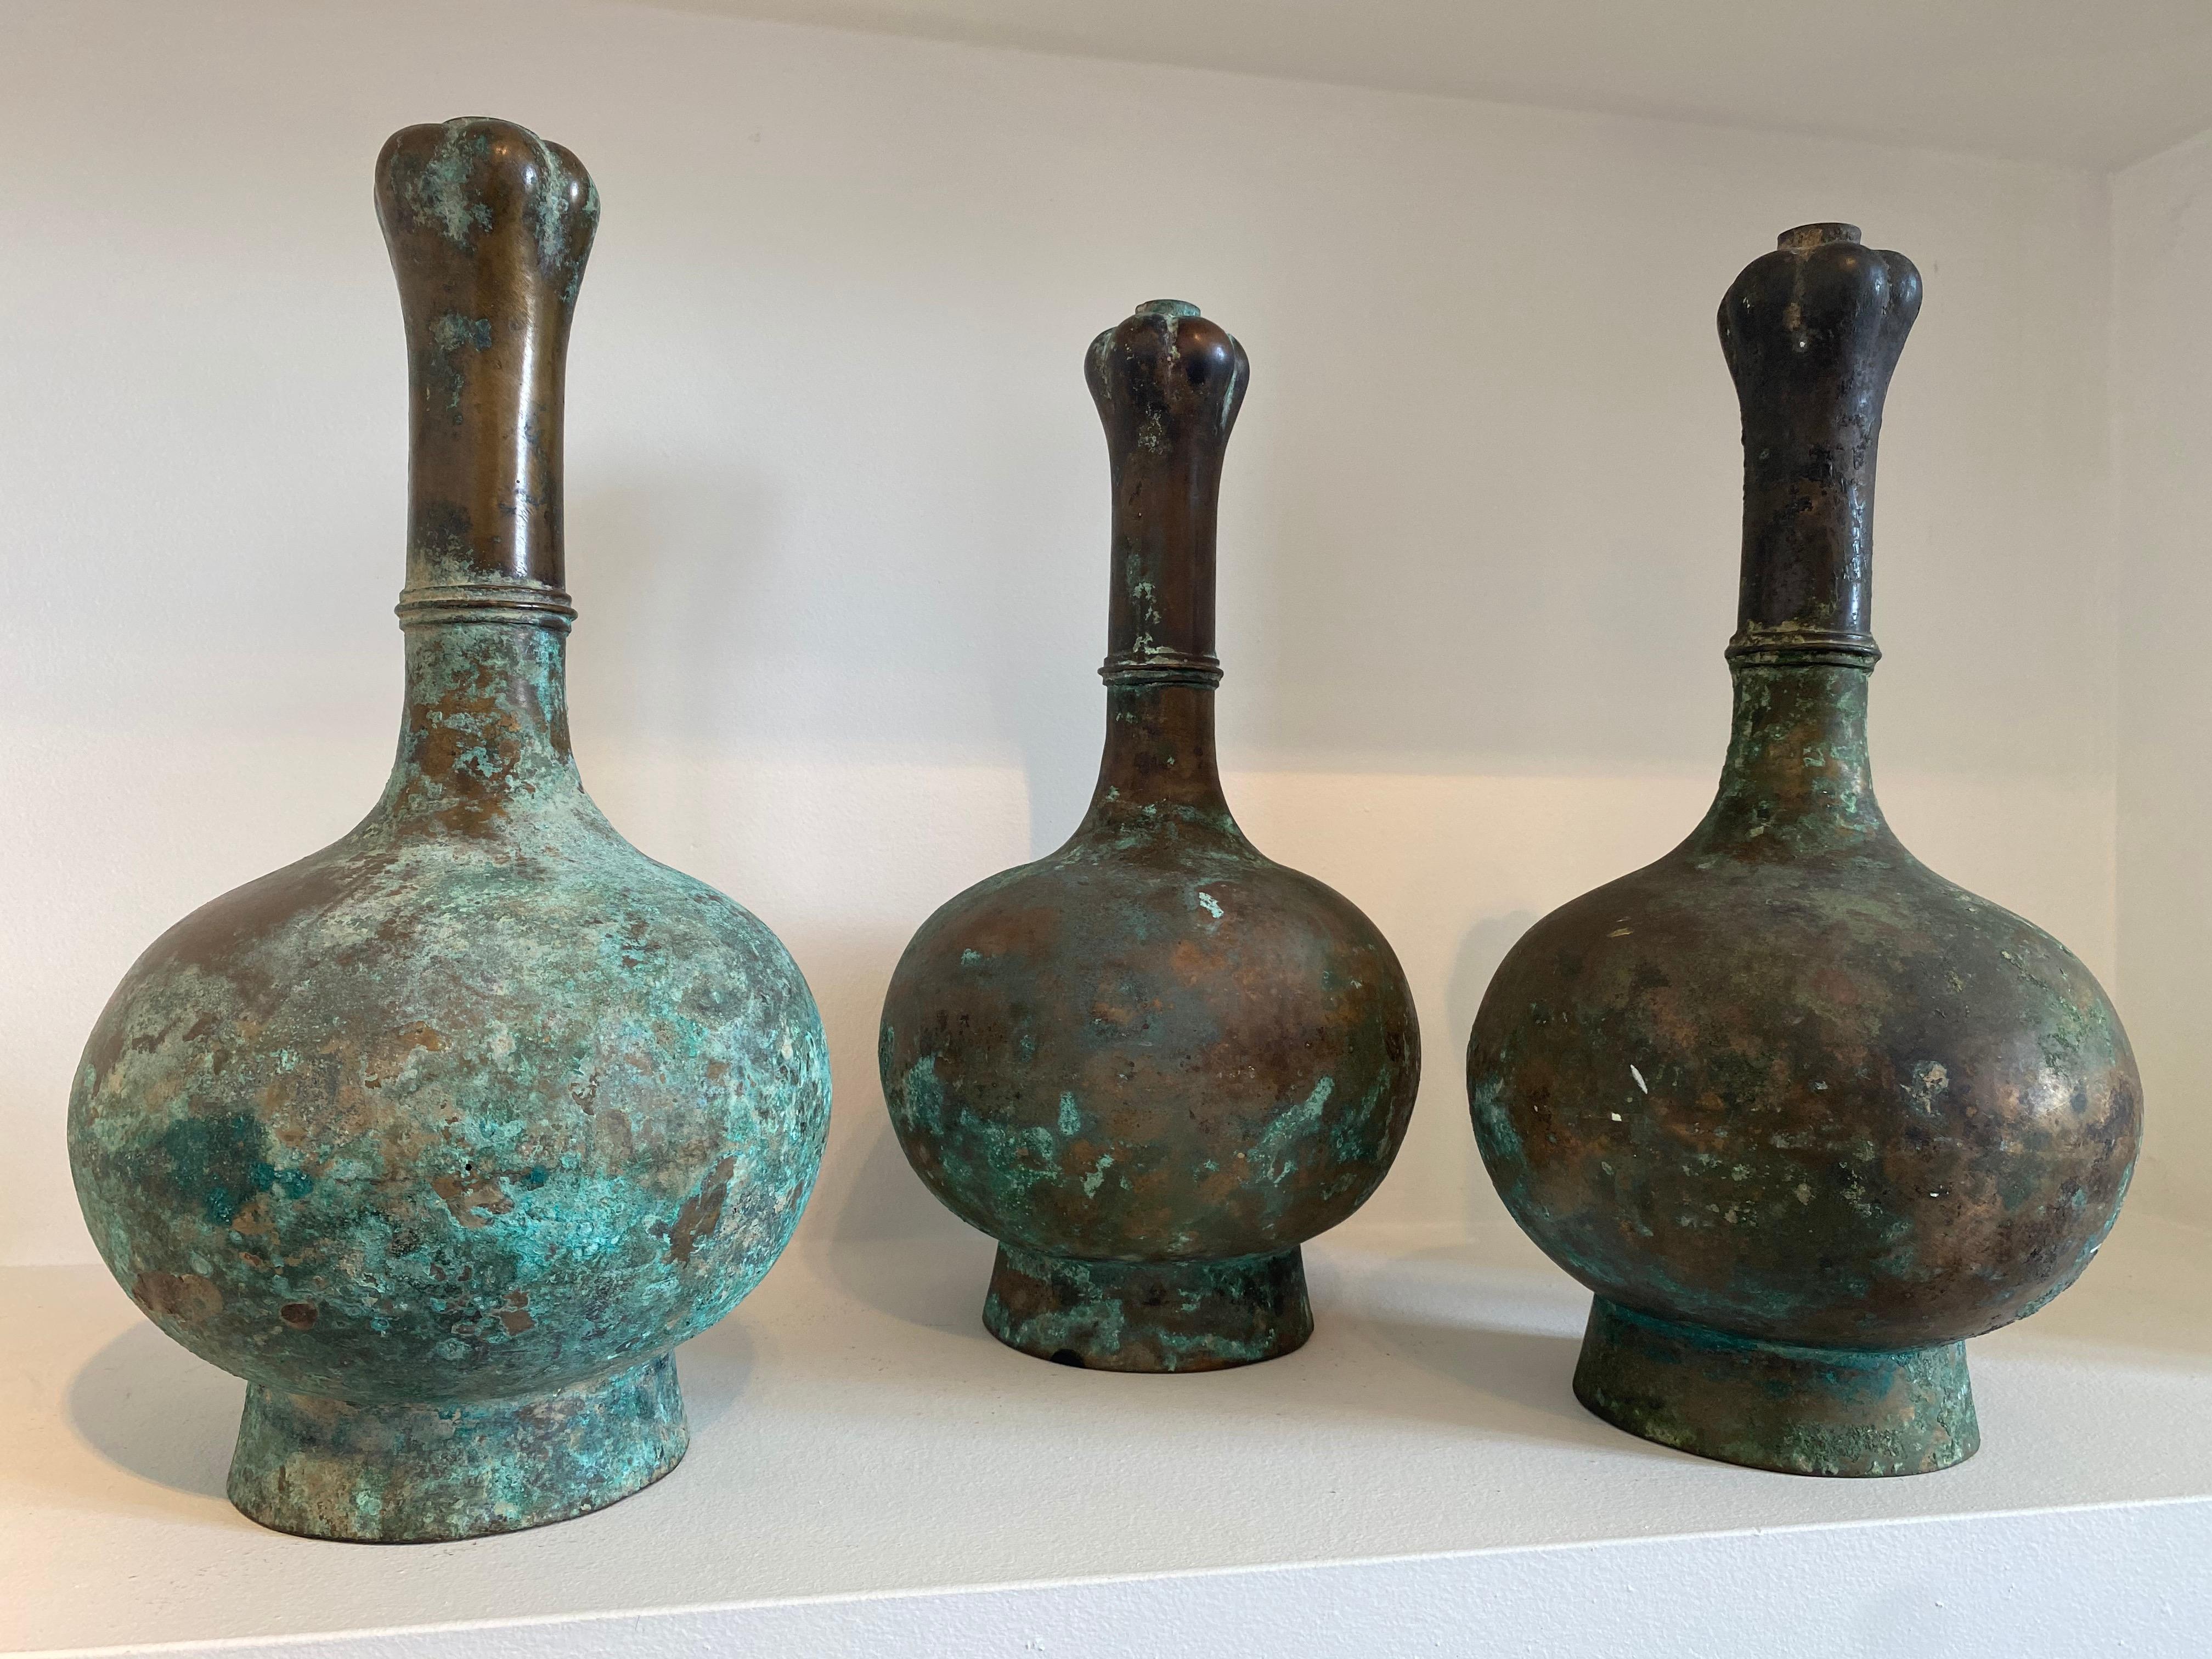 Außergewöhnliche, schöne Satz von 3 chinesischen Bronze Han Vasen,
tolle Patina und warme und abgenutzte Farbe,
außergewöhnlich, eine Sammlung von 3 dieser Vasen zu besitzen

 